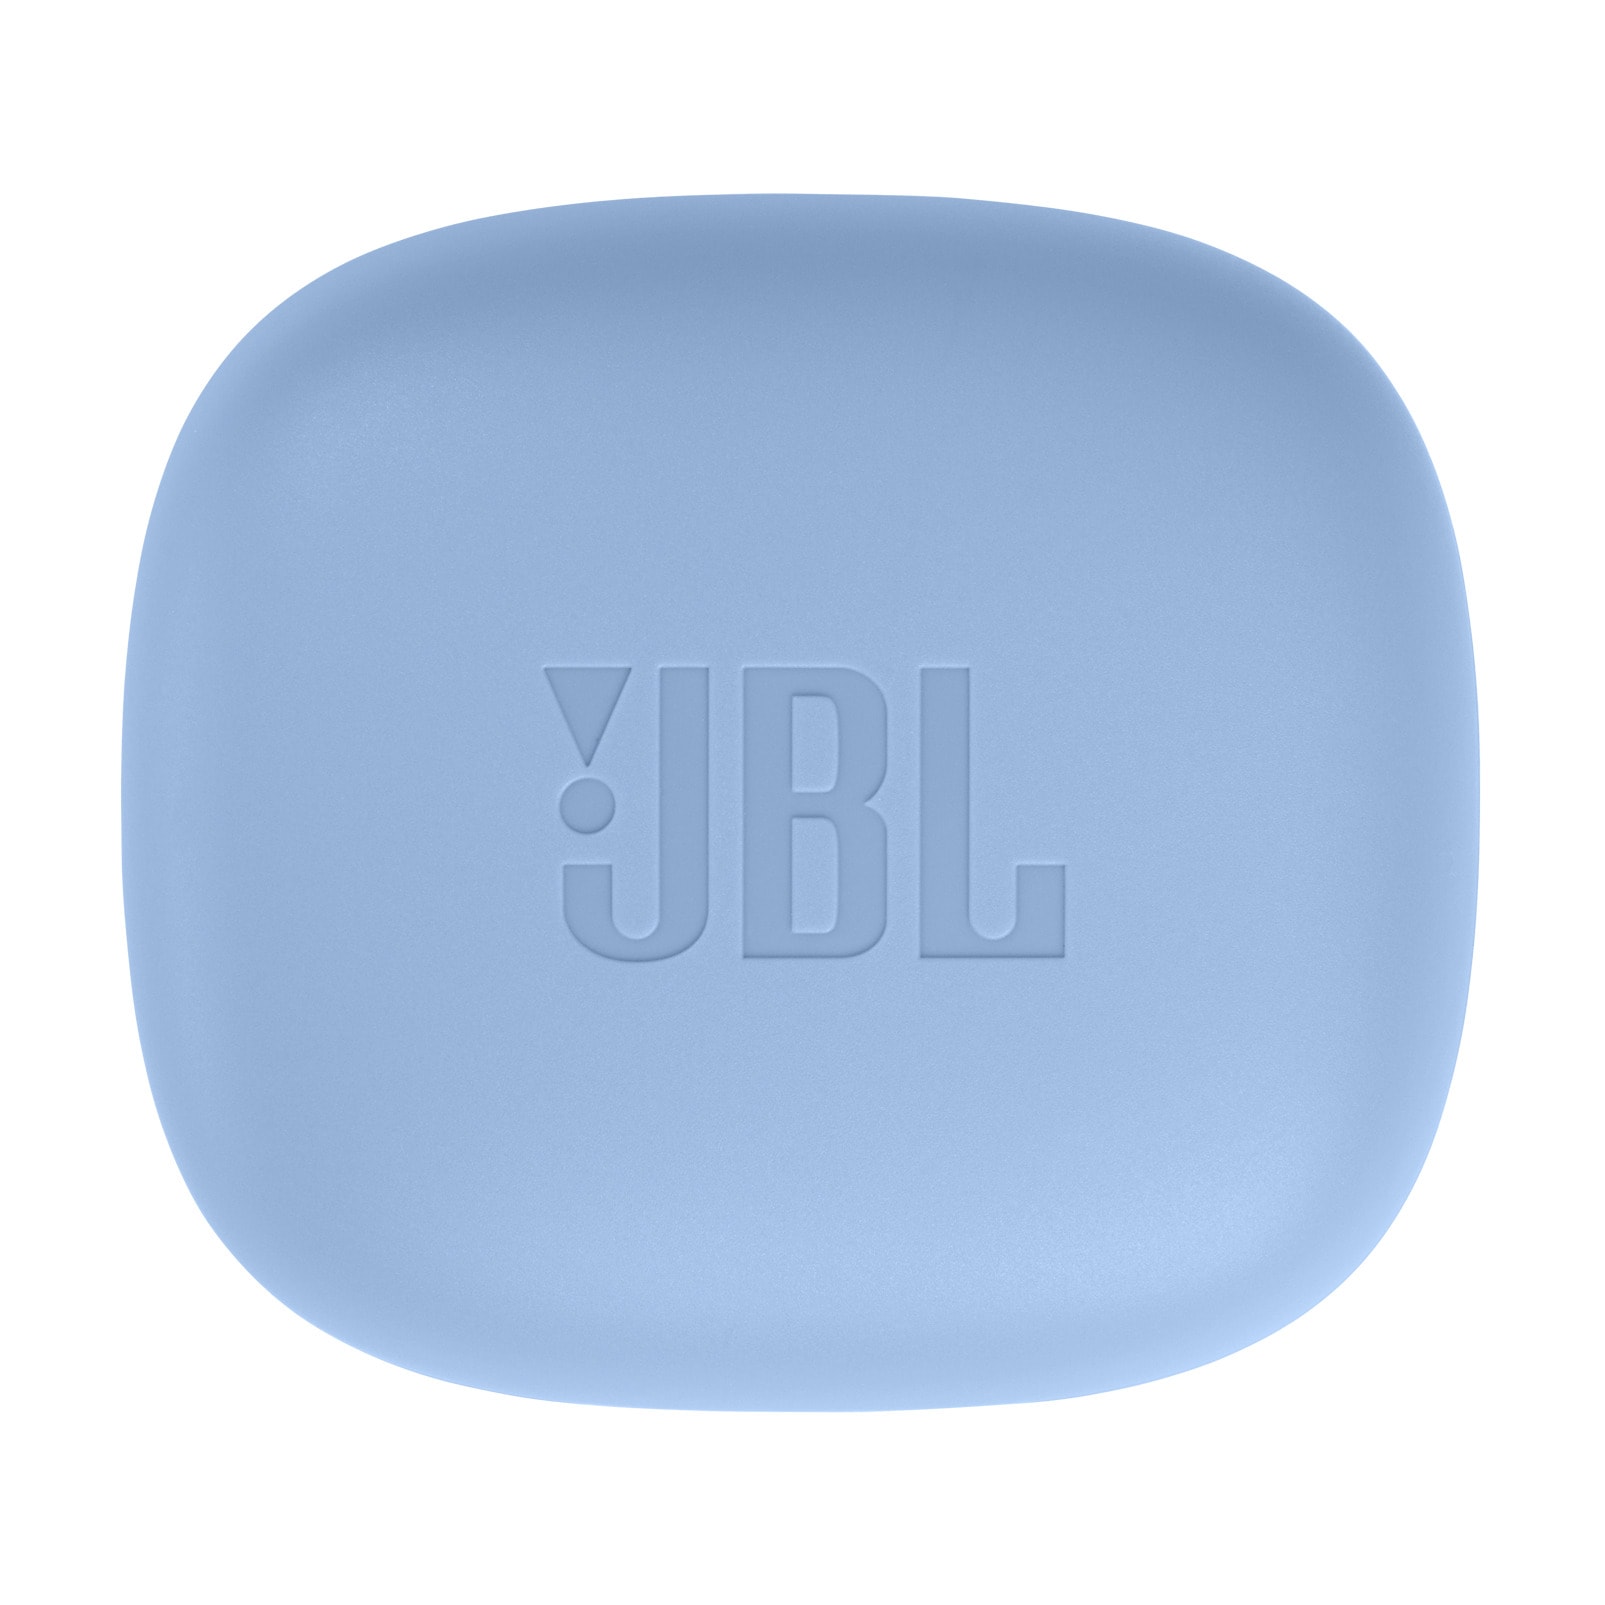 JBL wireless In-Ear-Kopfhörer »Wave OTTO bei Flex« jetzt